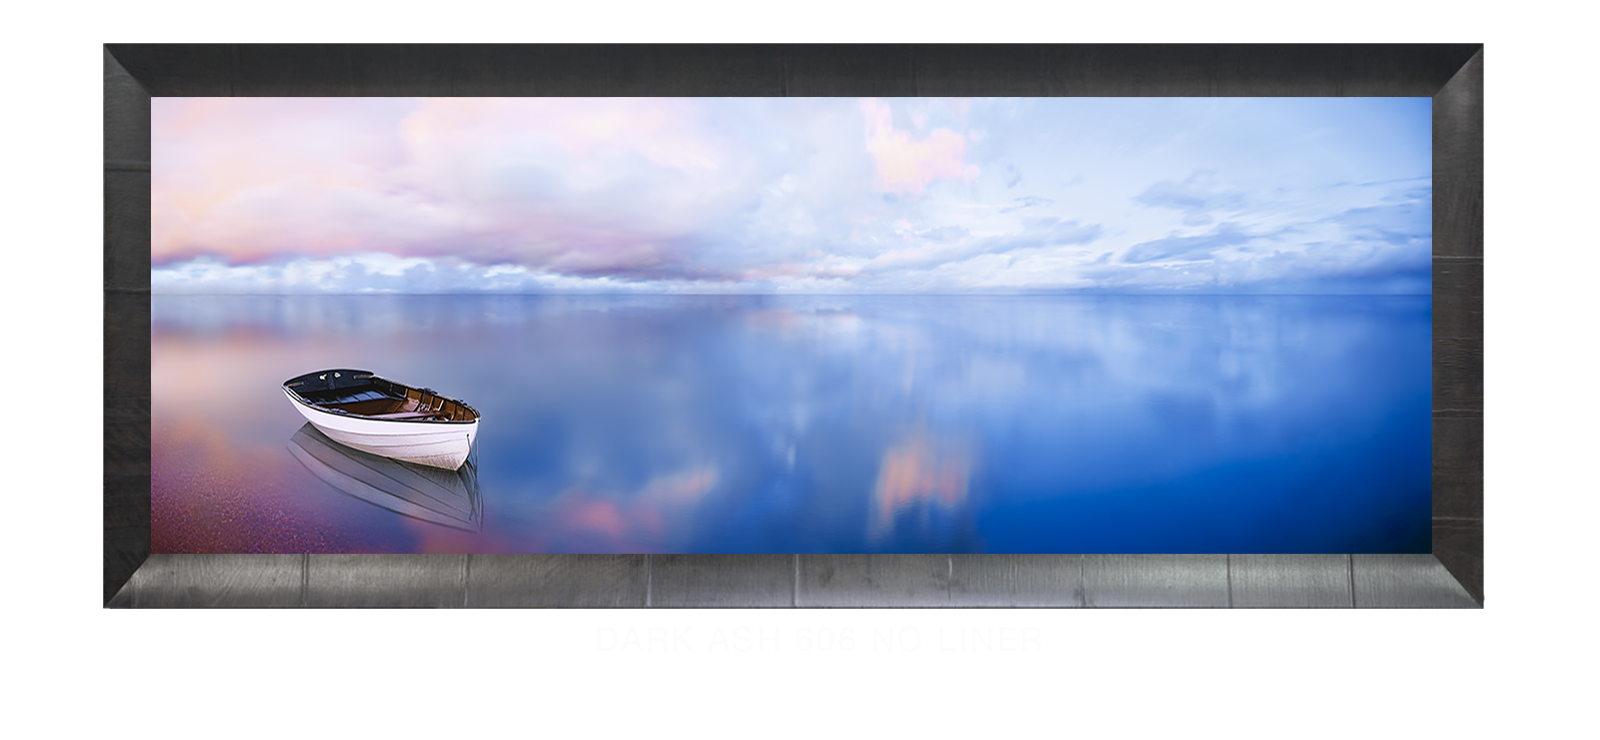 19ABLUELAKEBOAT Dark Ash 606 w_No Liner T